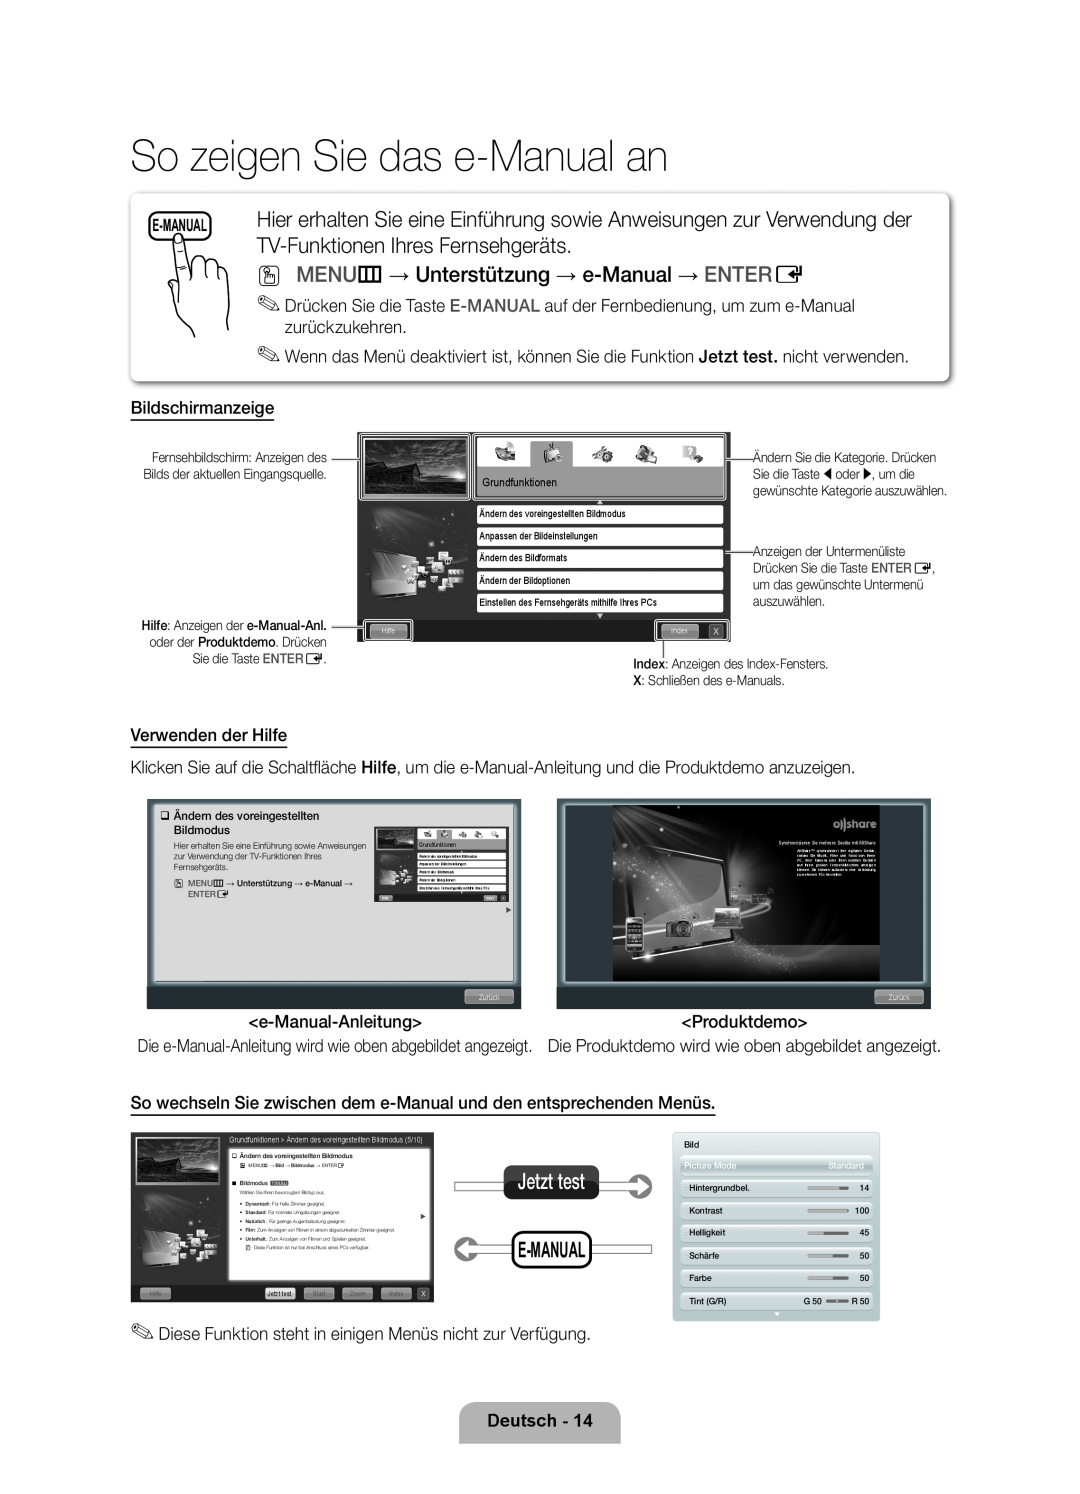 Samsung UE55D6500VSXXN So zeigen Sie das e-Manual an, TV-Funktionen Ihres Fernsehgeräts, E-Manual, Deutsch, Jetzt test 